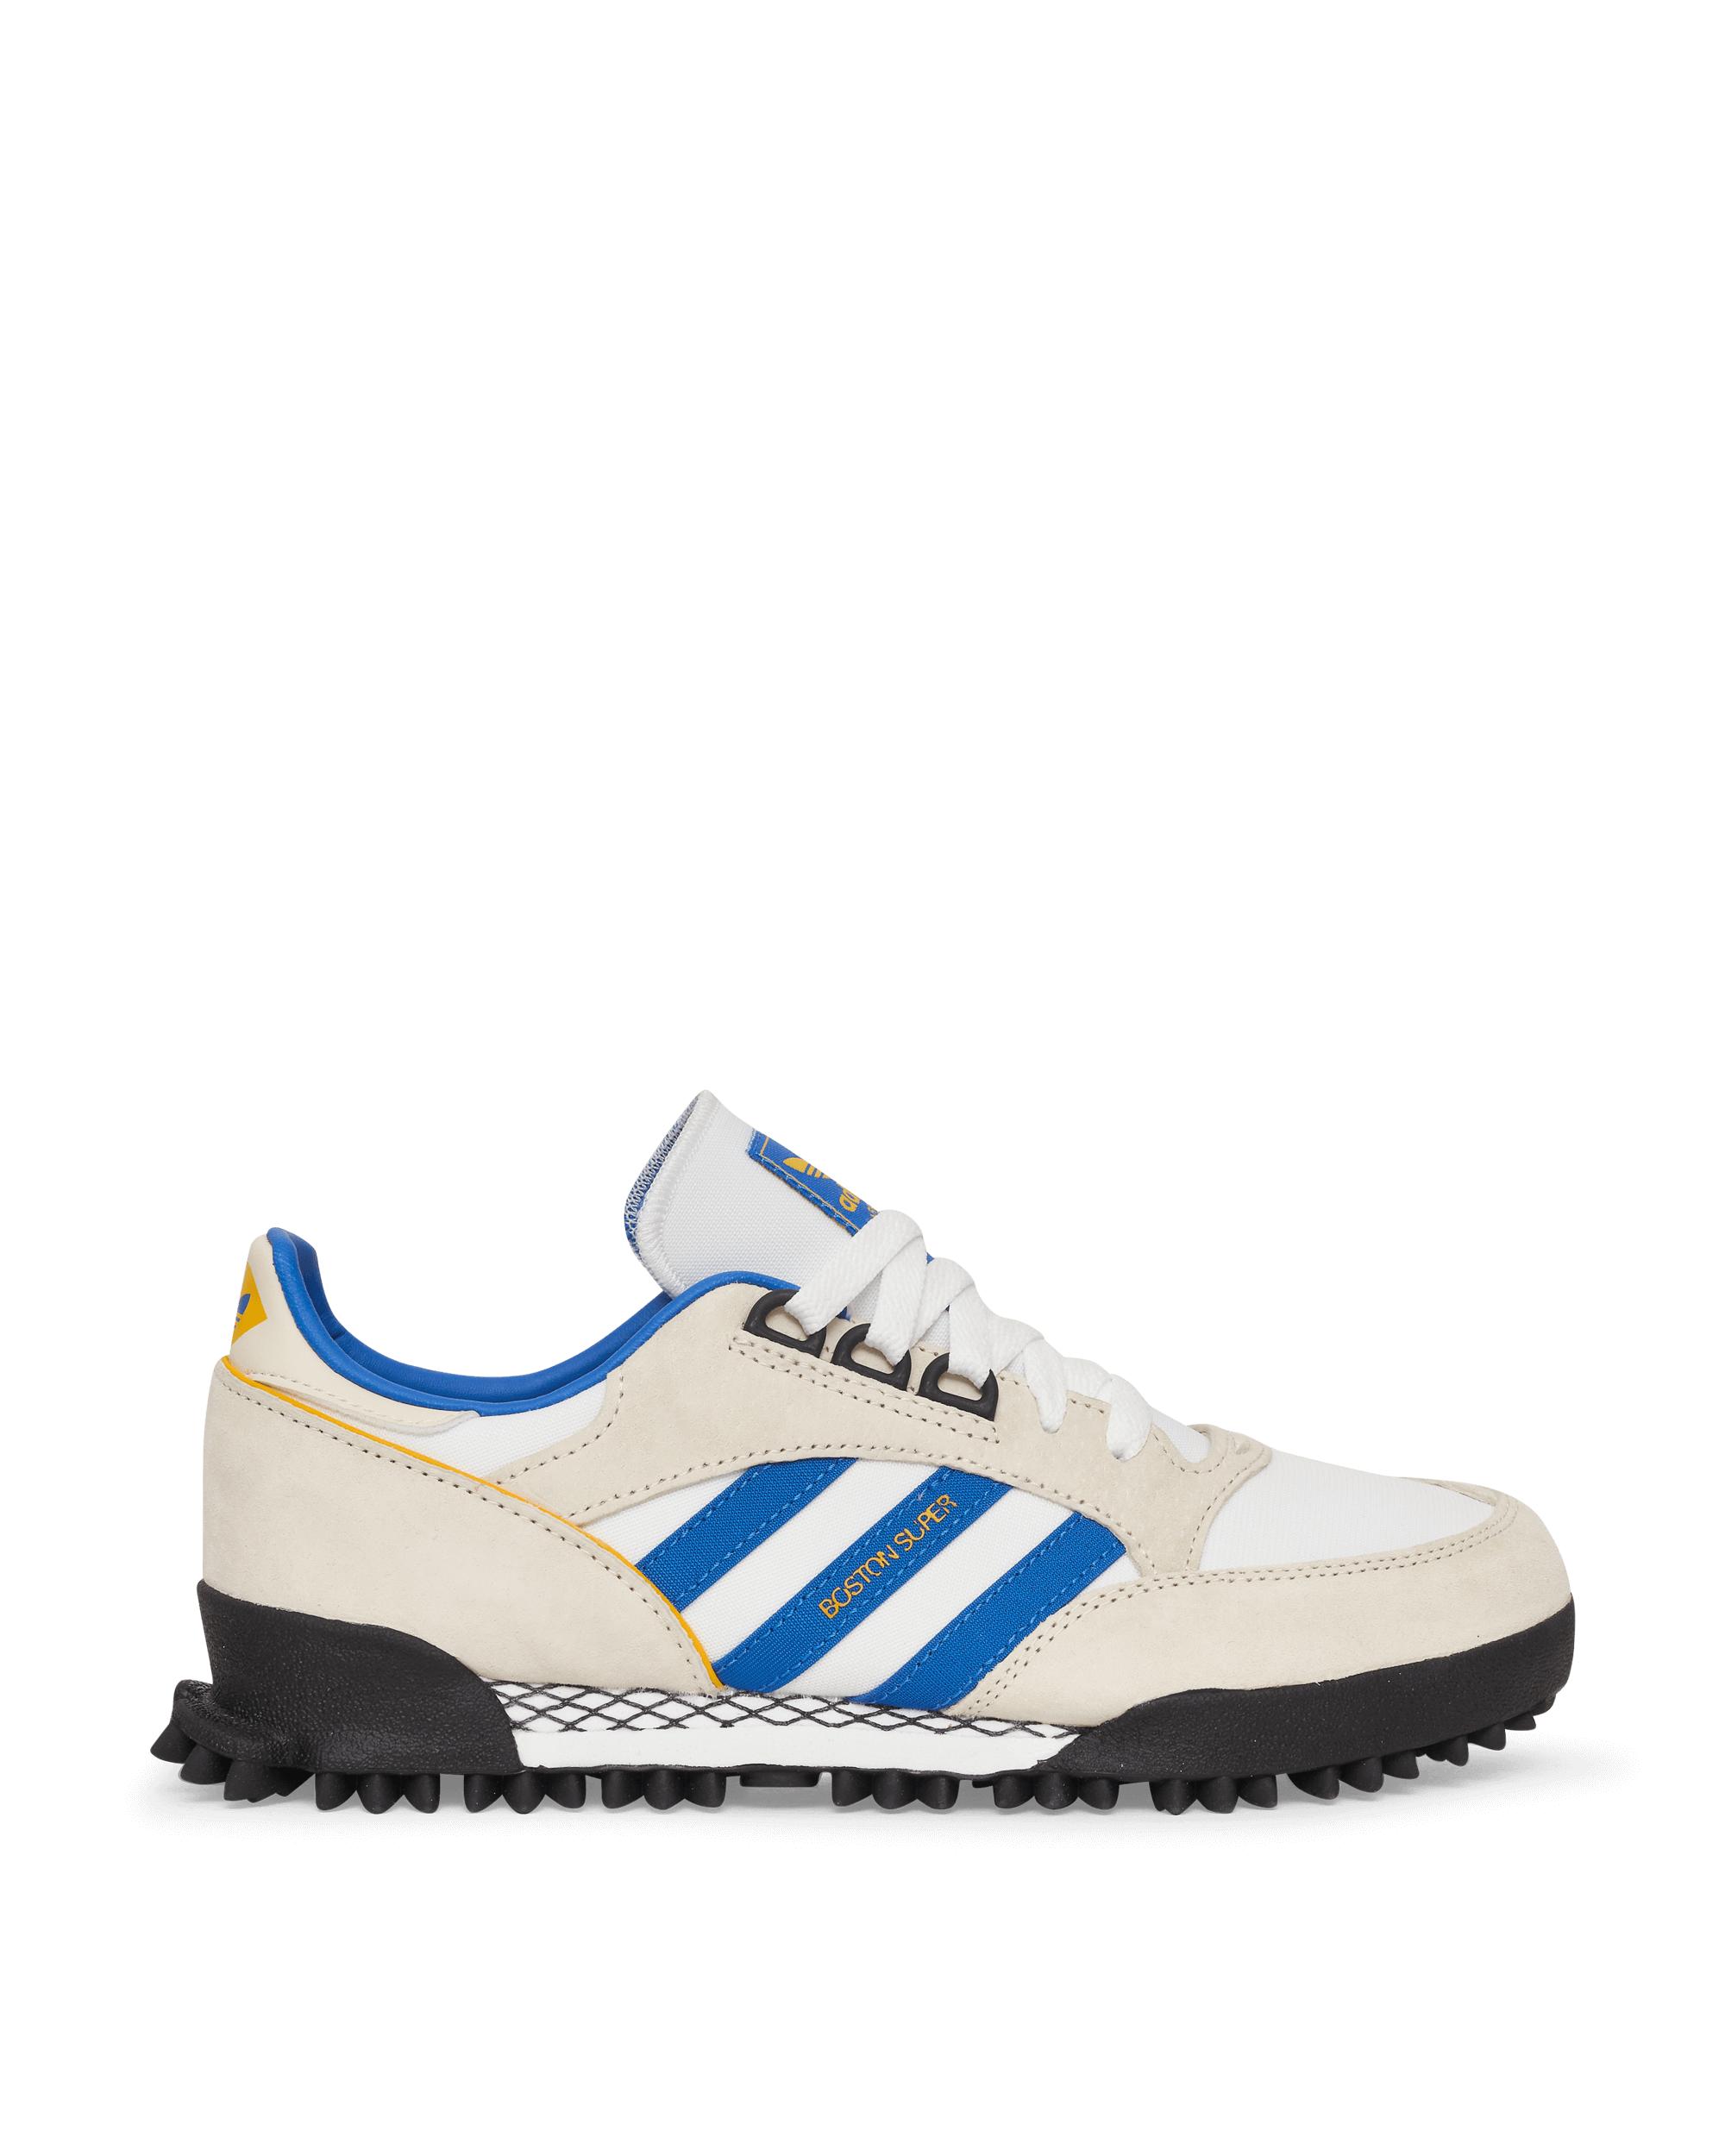 adidas Originals Leather Boston Super X Marathon Sneakers Cream White/blue  40 for Men - Lyst